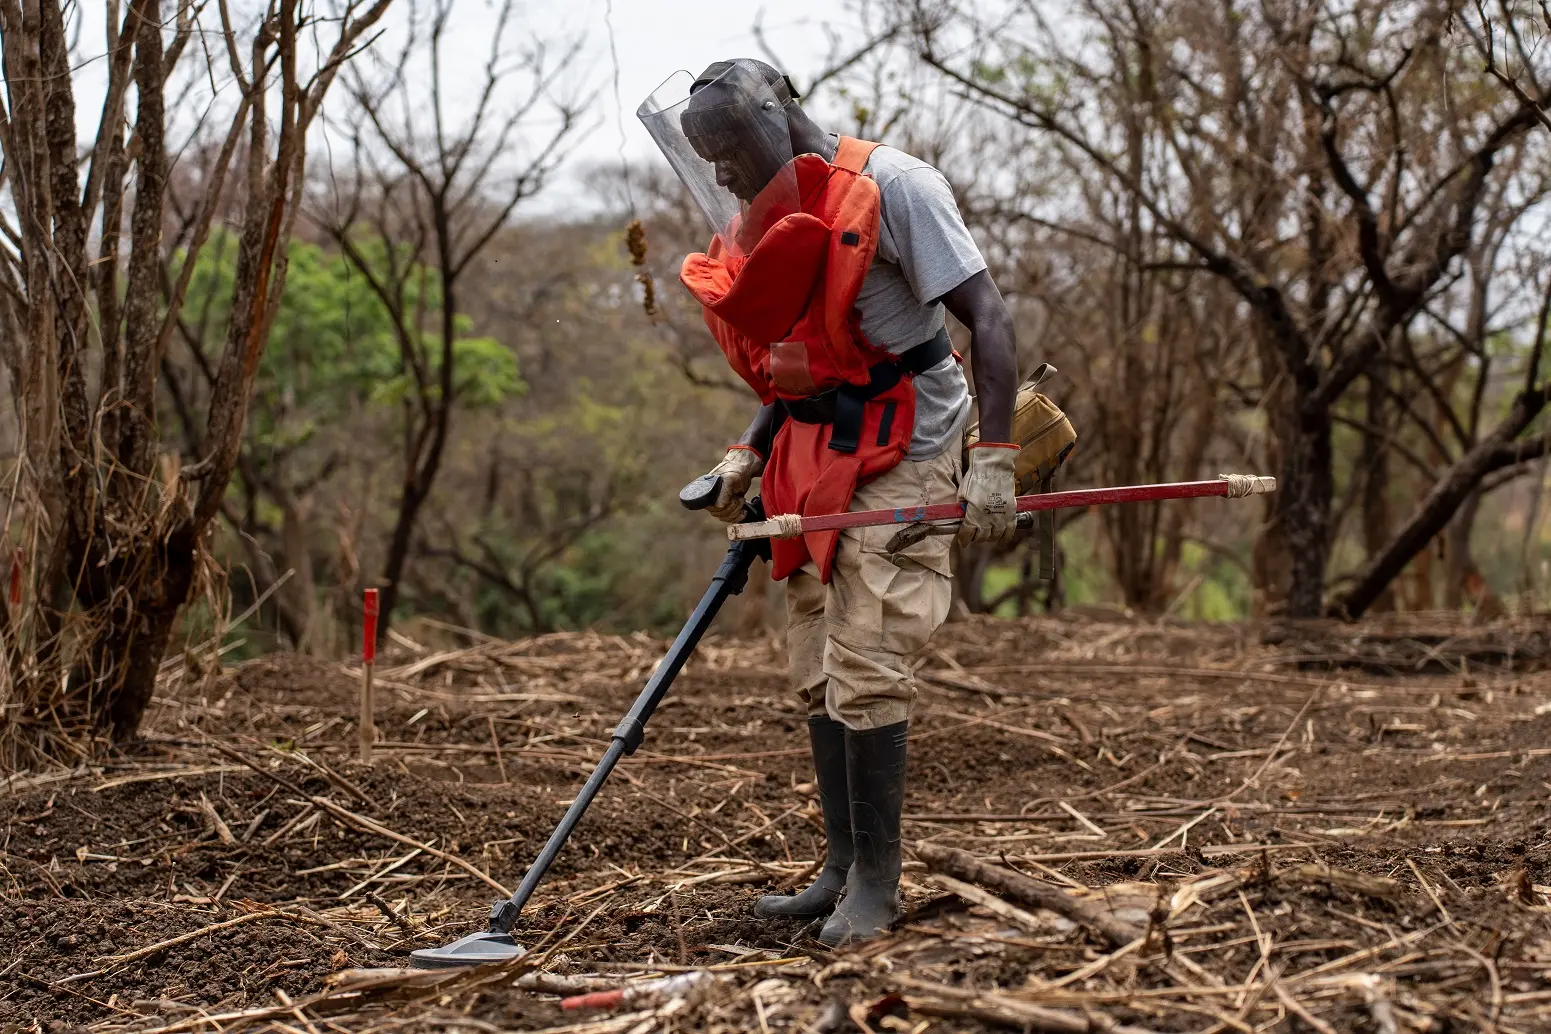 عامل إزالة ألغام من منظمة "دان تشيرش إيد" يطهّر منطقة مشكوك بتلوثها بمخلفات حرب متفجرة في باجوك، جنوب السودان